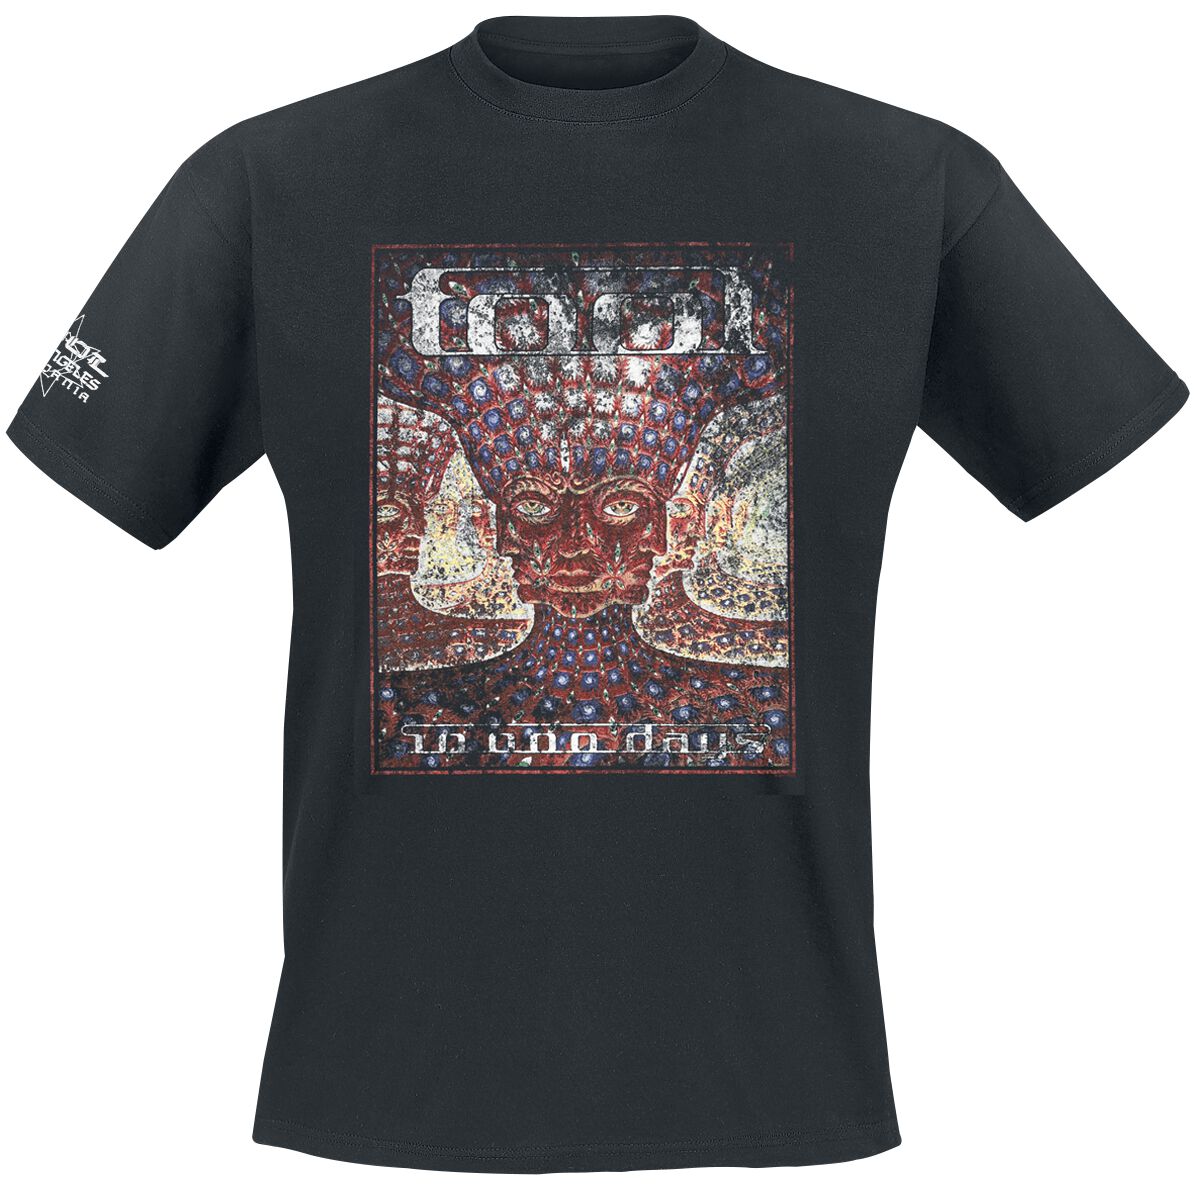 Tool T-Shirt - 10,000 days - S bis XXL - für Männer - Größe S - schwarz  - Lizenziertes Merchandise!